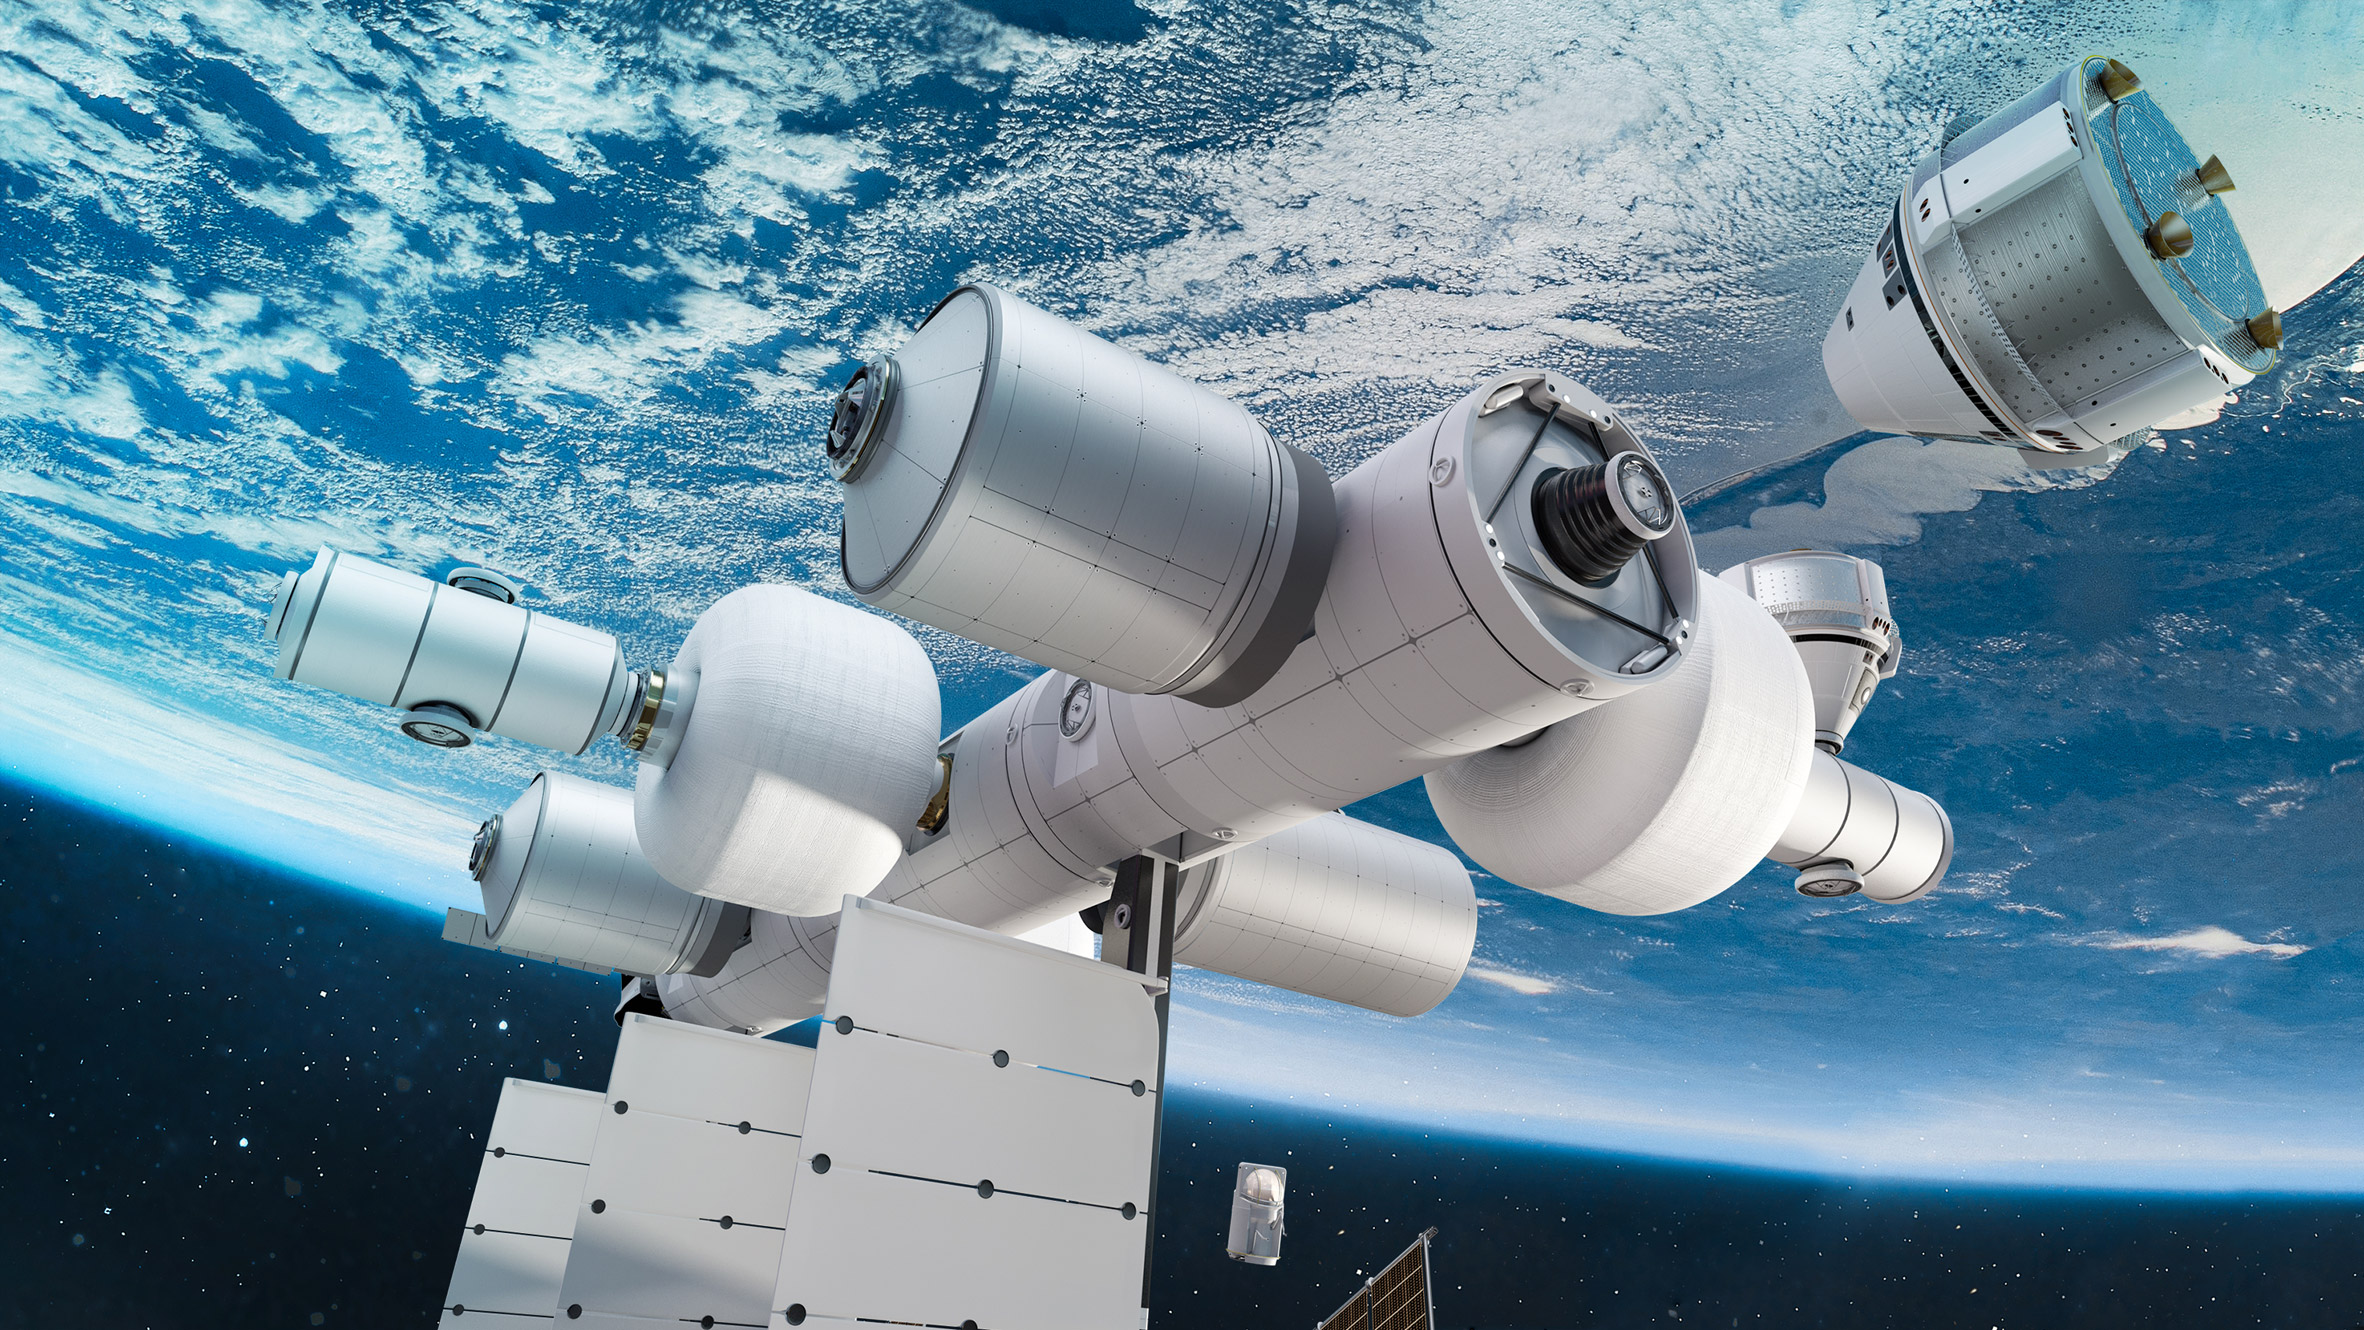 Vào đúng ngày hôm nay, công ty Blue Origin đã chính thức giới thiệu con tàu vũ trụ mang tên Blue Origin space station, với thiết kế đầy ấn tượng. Hãy xem hình ảnh liên quan để khám phá các tính năng tuyệt vời của trạm không gian này nhé!